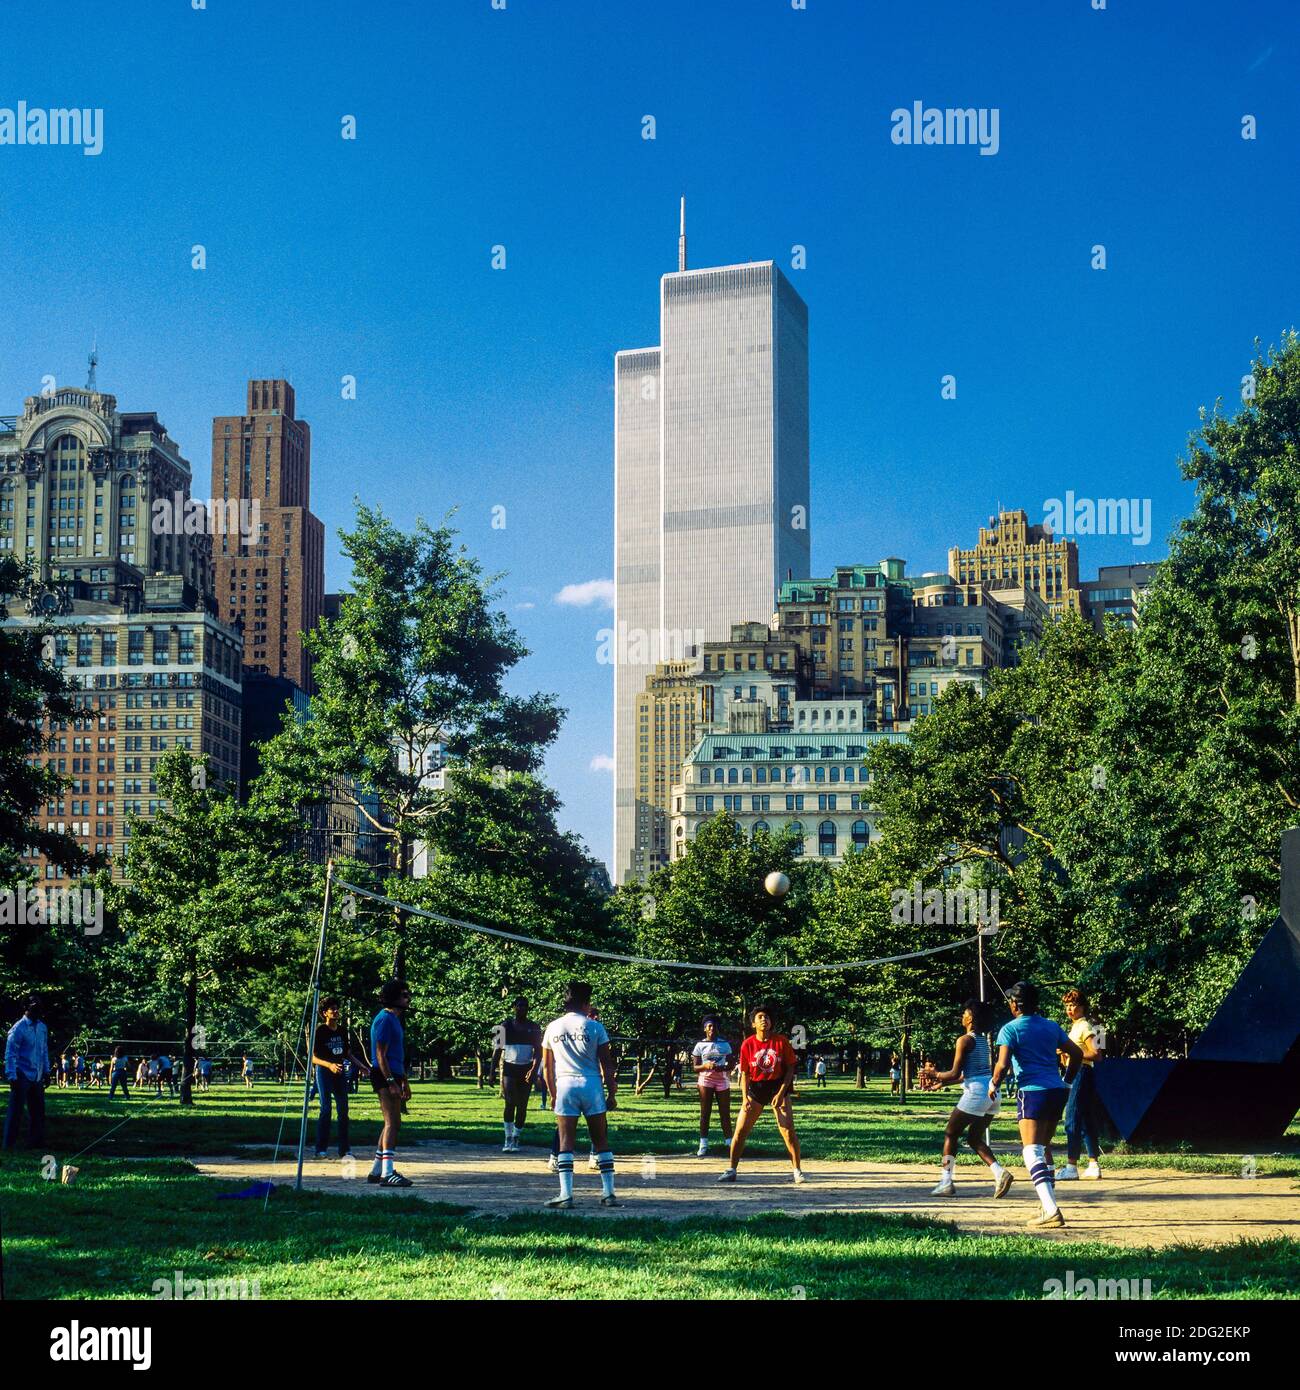 New York 1985, precedente al 2001, giocatori di pallavolo, Battery Park, WTC World Trade Center Twin Towers, Lower Manhattan, New York City, NY, NYC, USA, Foto Stock